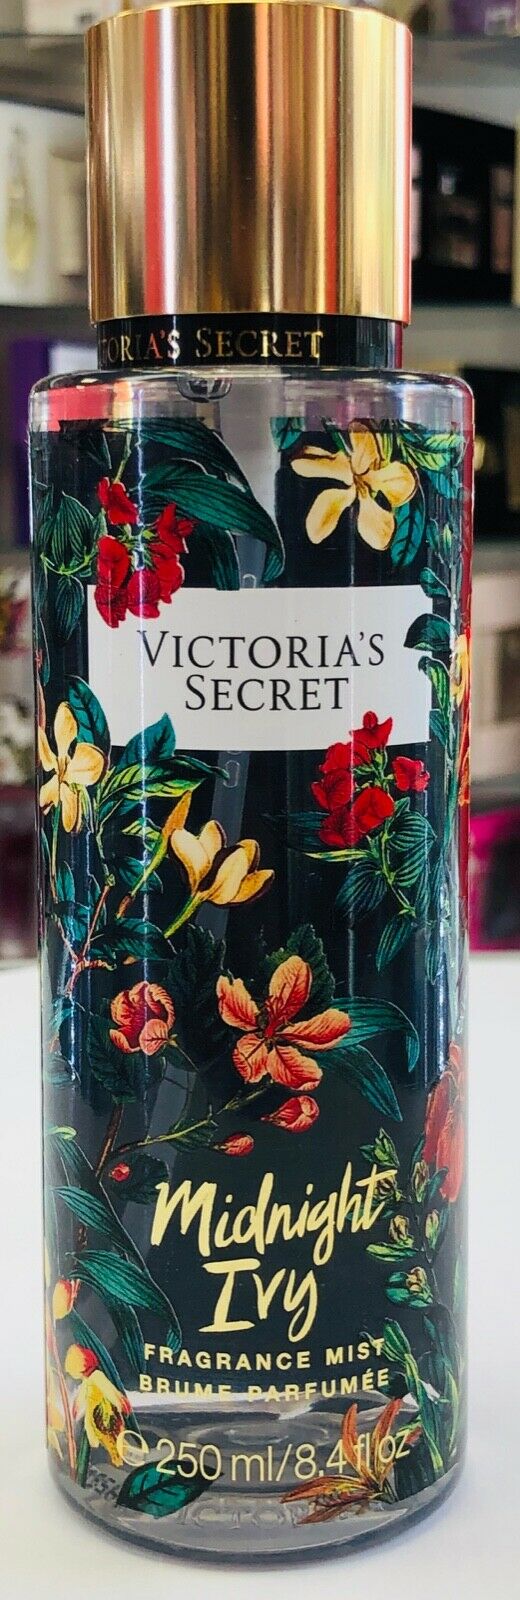 Victoria's Secret Midnight Ivy Wild Flora Fragrance Mist 8.4fl.oz